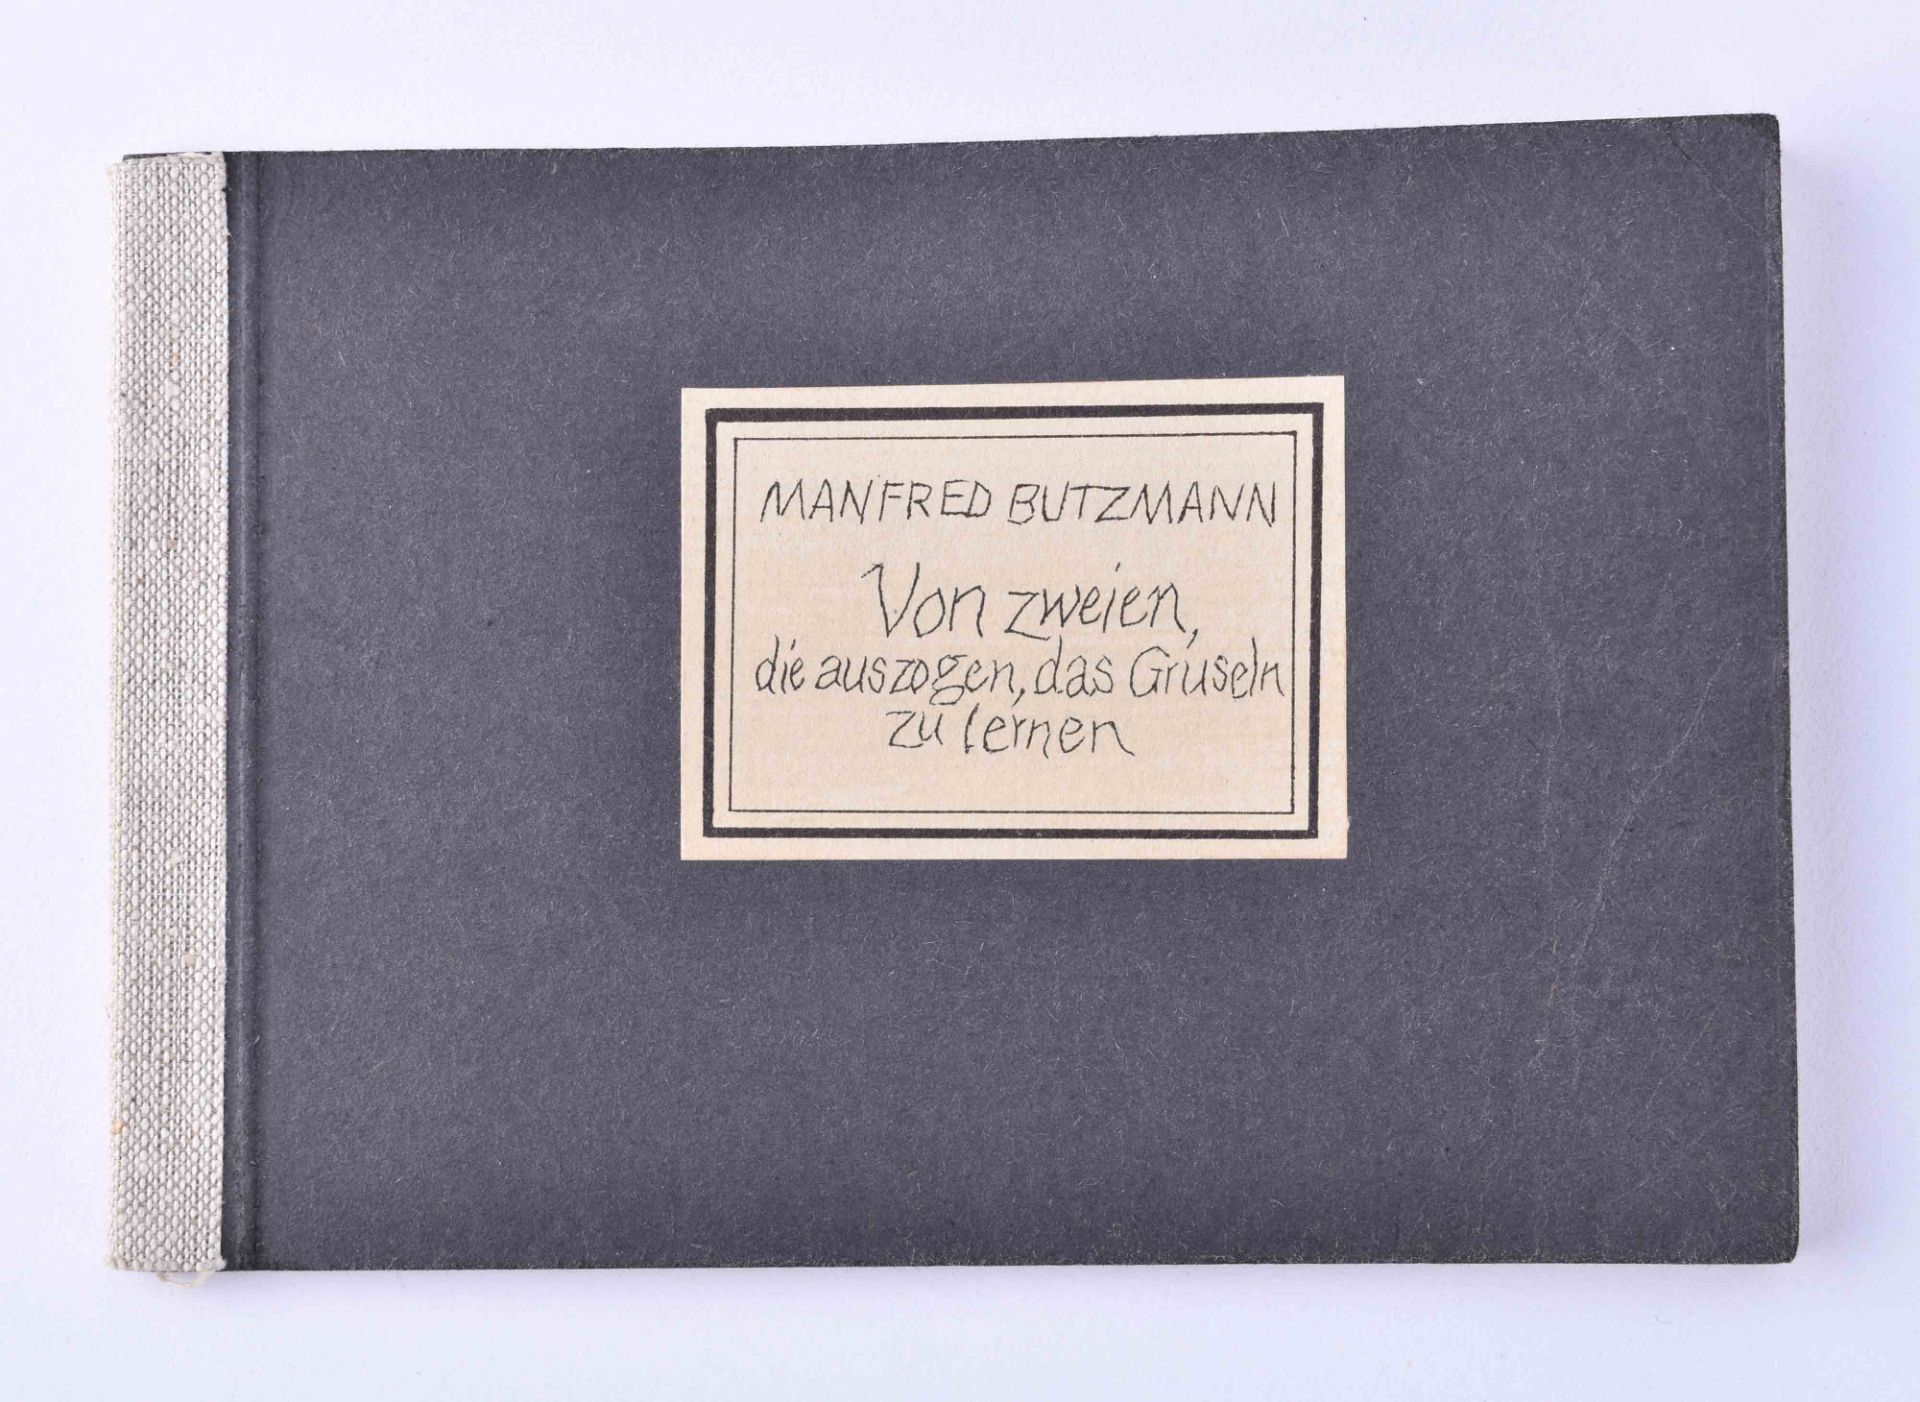 Manfred BUTZMANN (1942)